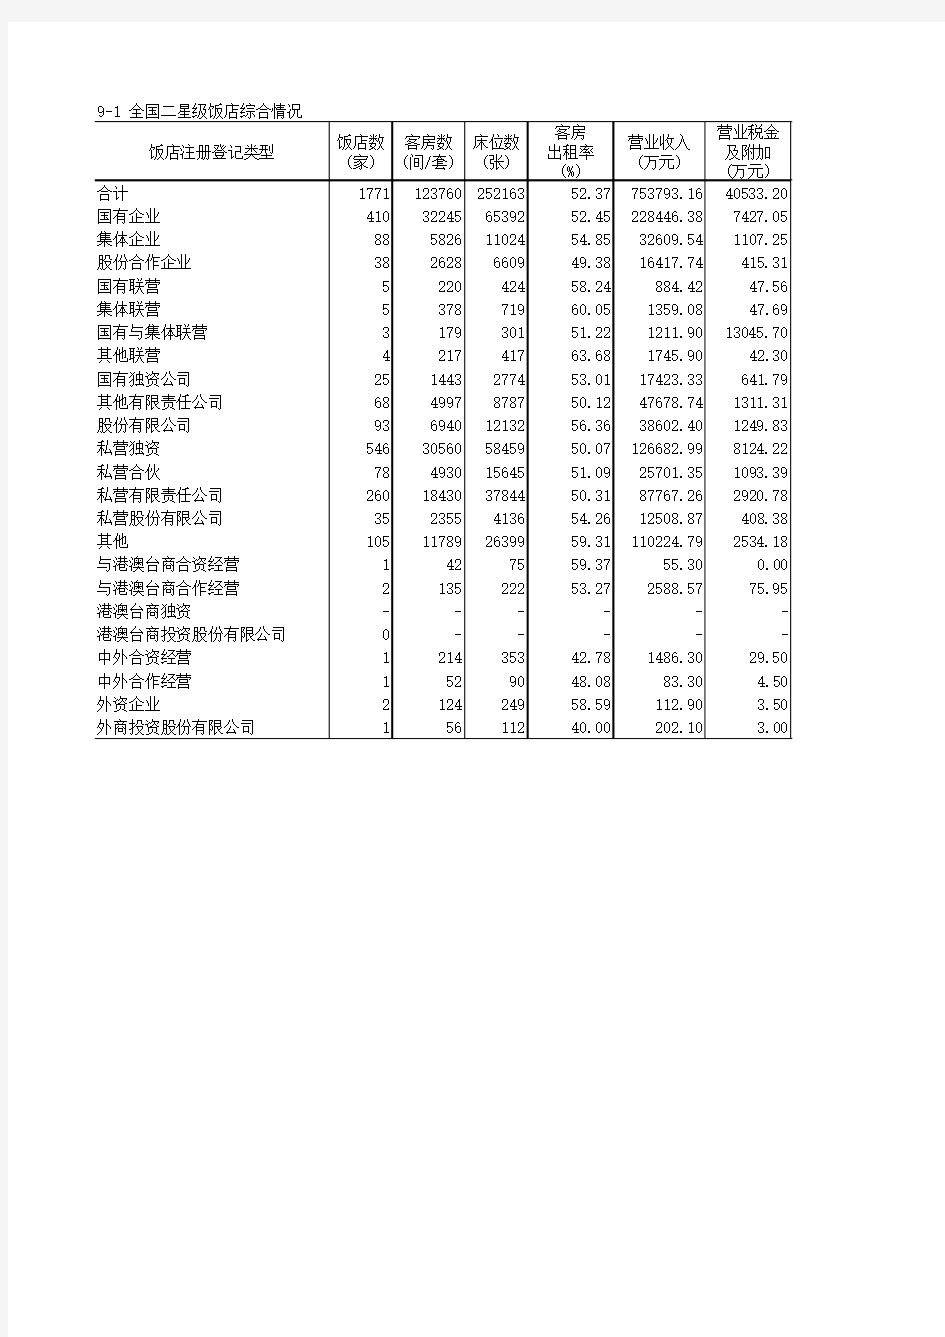 中国旅游统计年鉴2017数据：9-1_全国二星级饭店综合情况